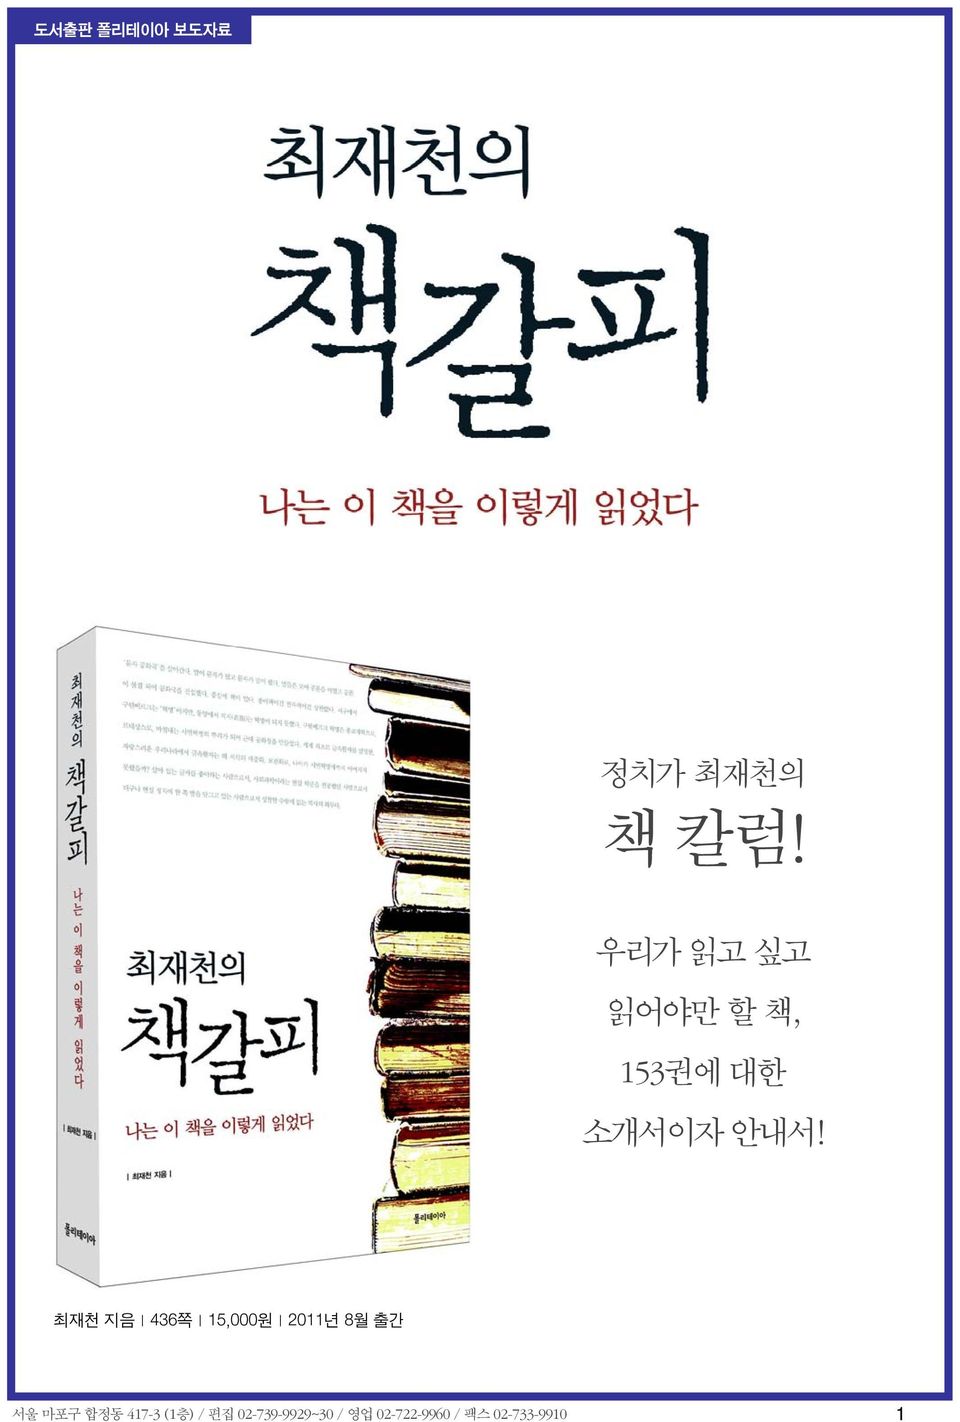 최재천 지음 436쪽 15,000원 2011년 8월 출간 서울 마포구 합정동